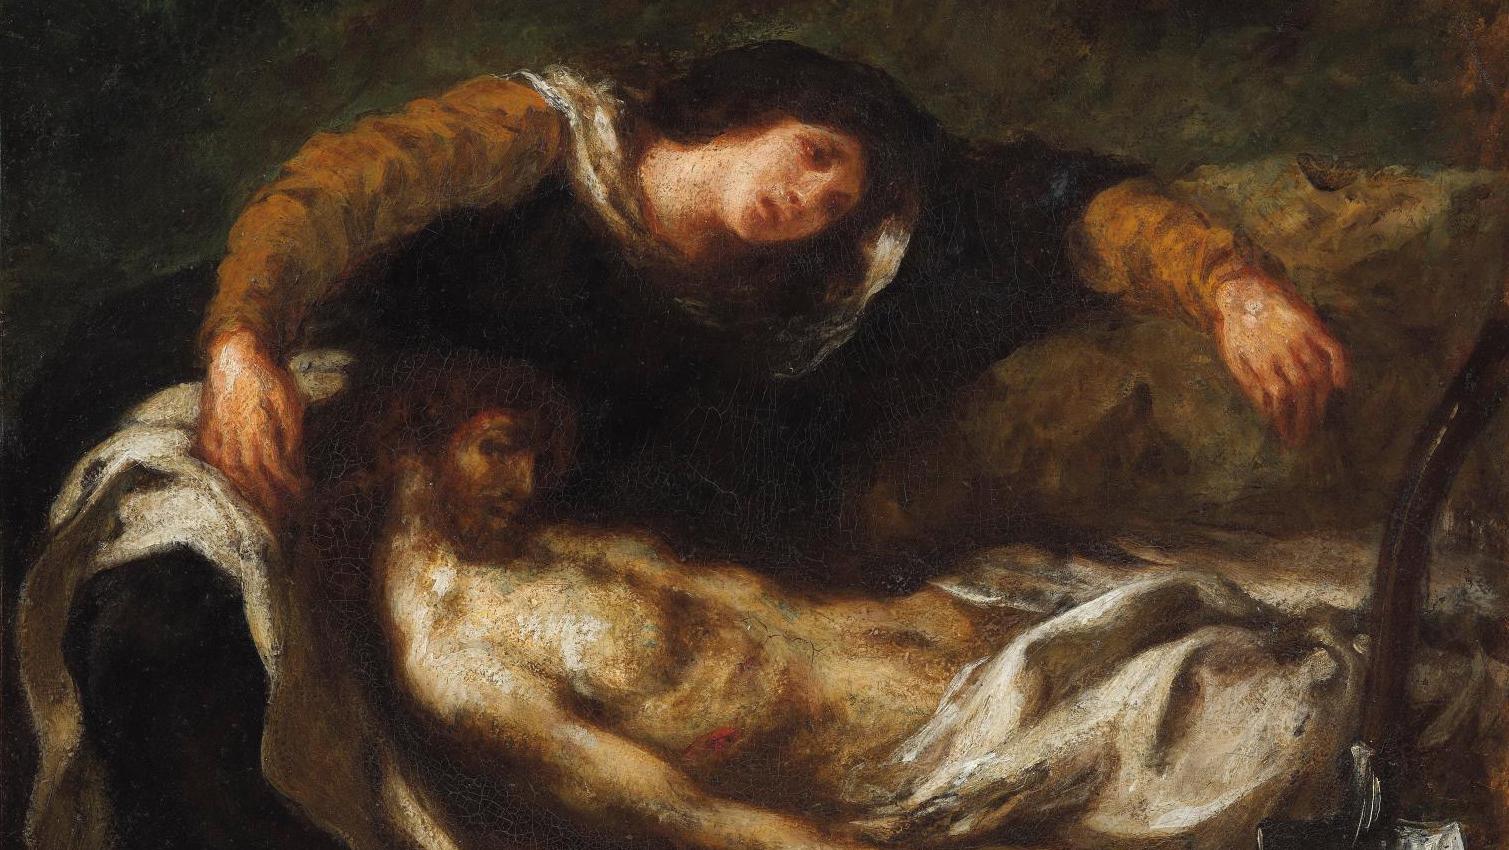 Eugène Delacroix (1798-1863), Mise au tombeau (Entombment of Christ), c. 1853, oil... Eugène Delacroix: An Impassioned Believer 